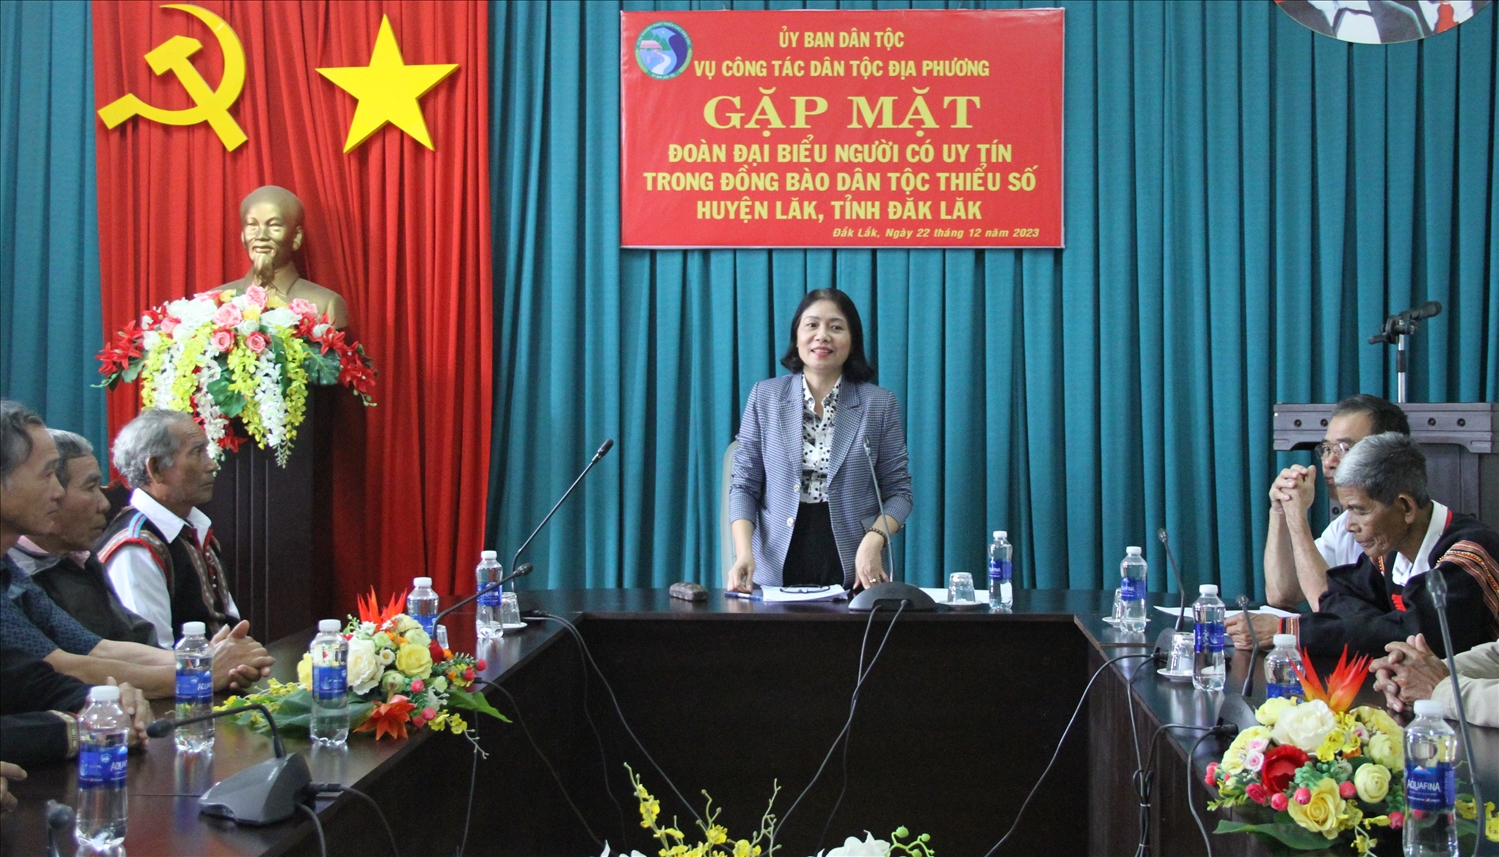 Phó Vụ trưởng Vụ Công tác dân tộc địa phương Phạm Thị Phước An phát biểu tại buổi gặp mặt